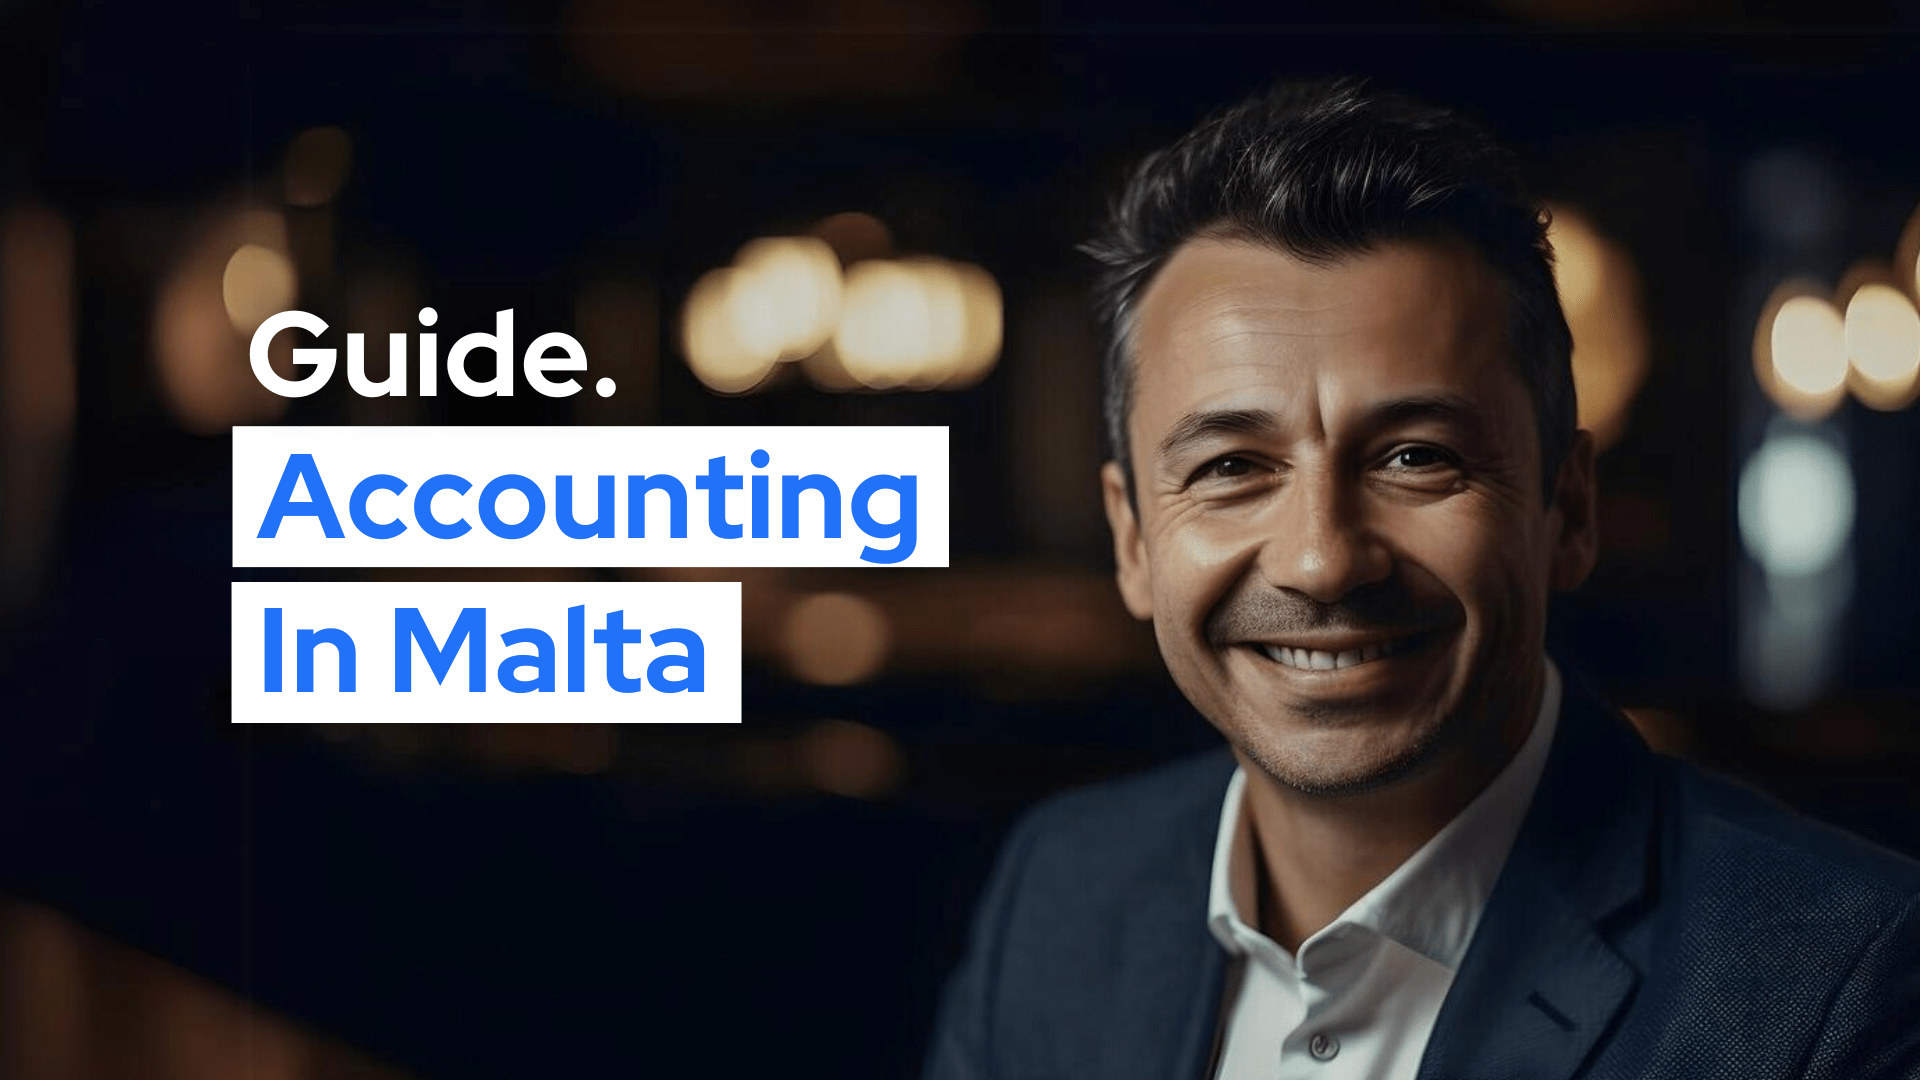 accountant in Malta guide